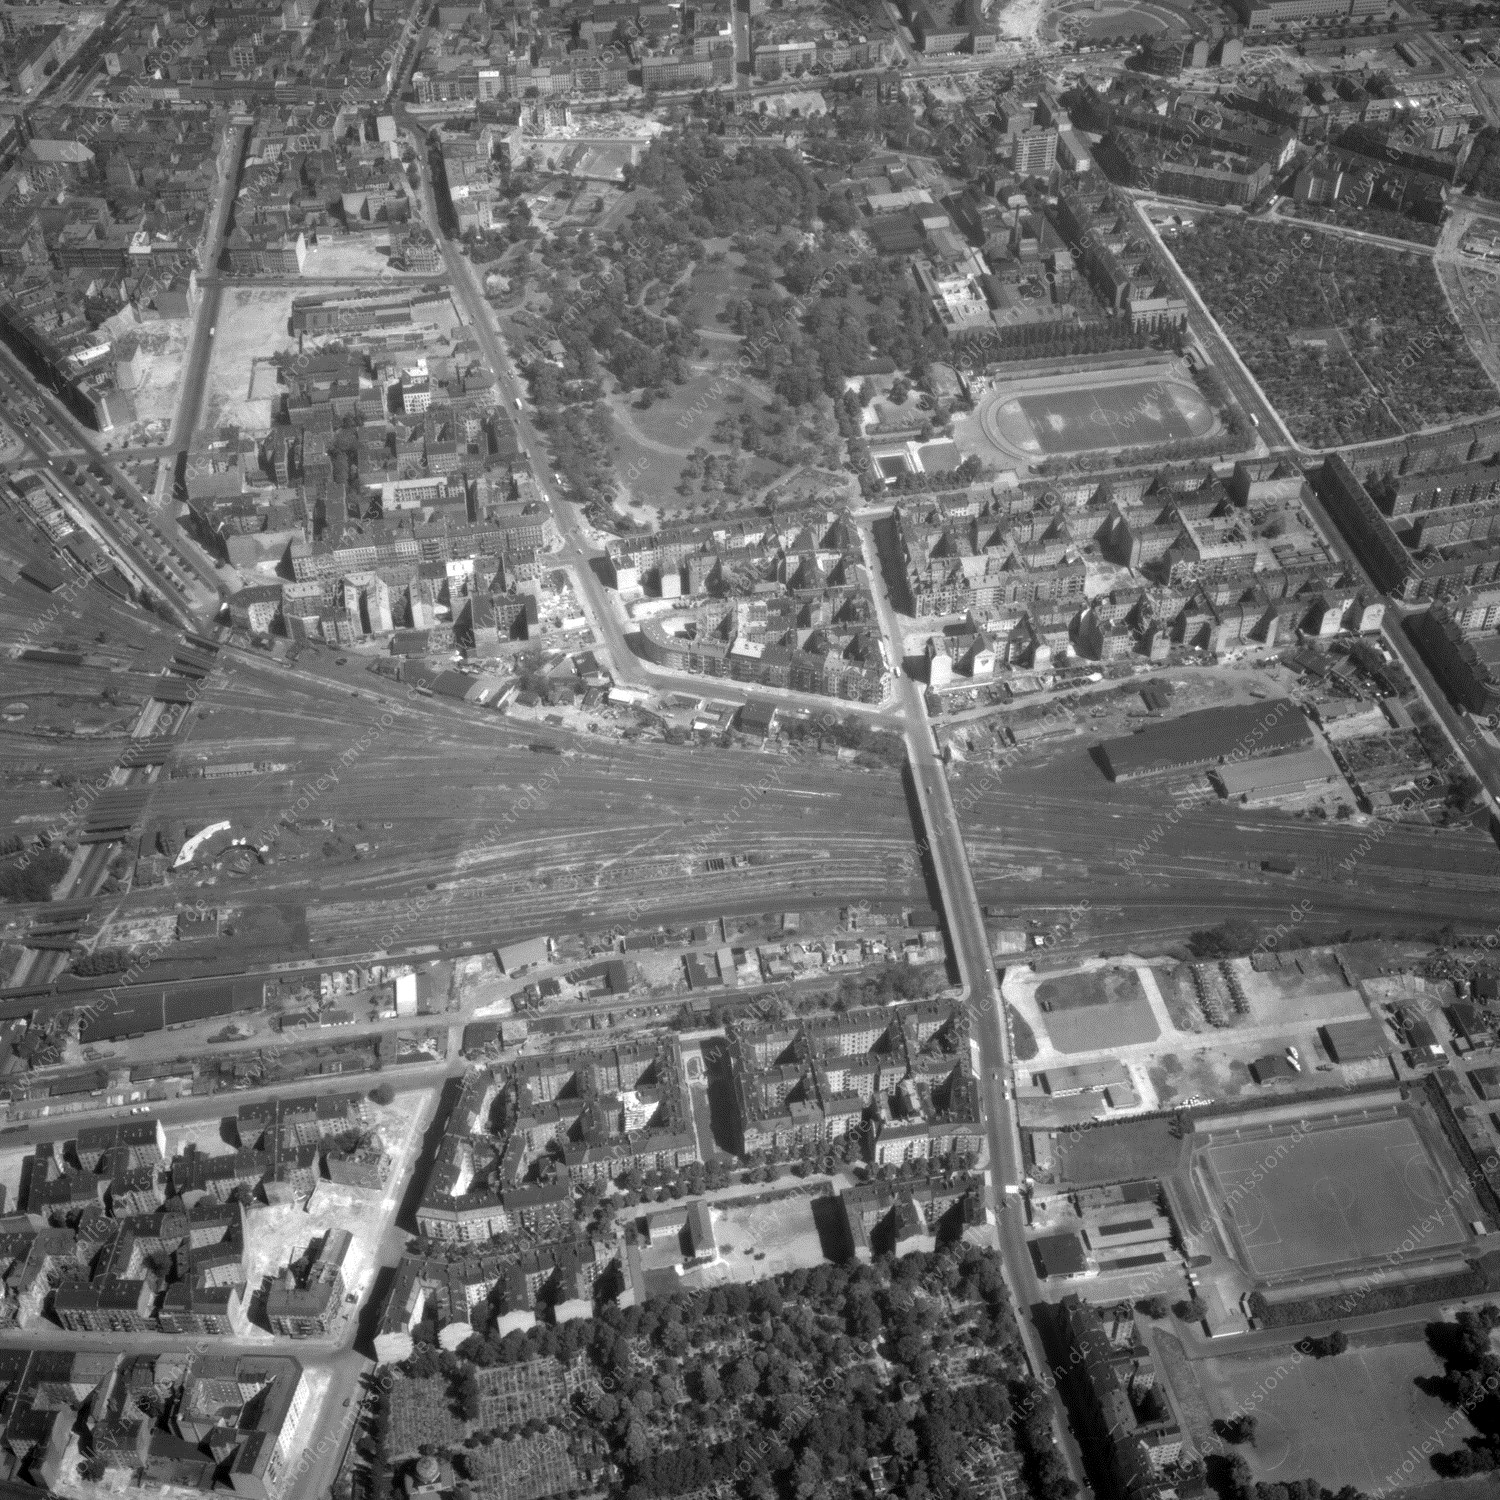 Alte Fotos und Luftbilder von Berlin - Luftbildaufnahme Nr. 02 - Historische Luftaufnahmen von West-Berlin aus dem Jahr 1954 - Flugstrecke Hotel